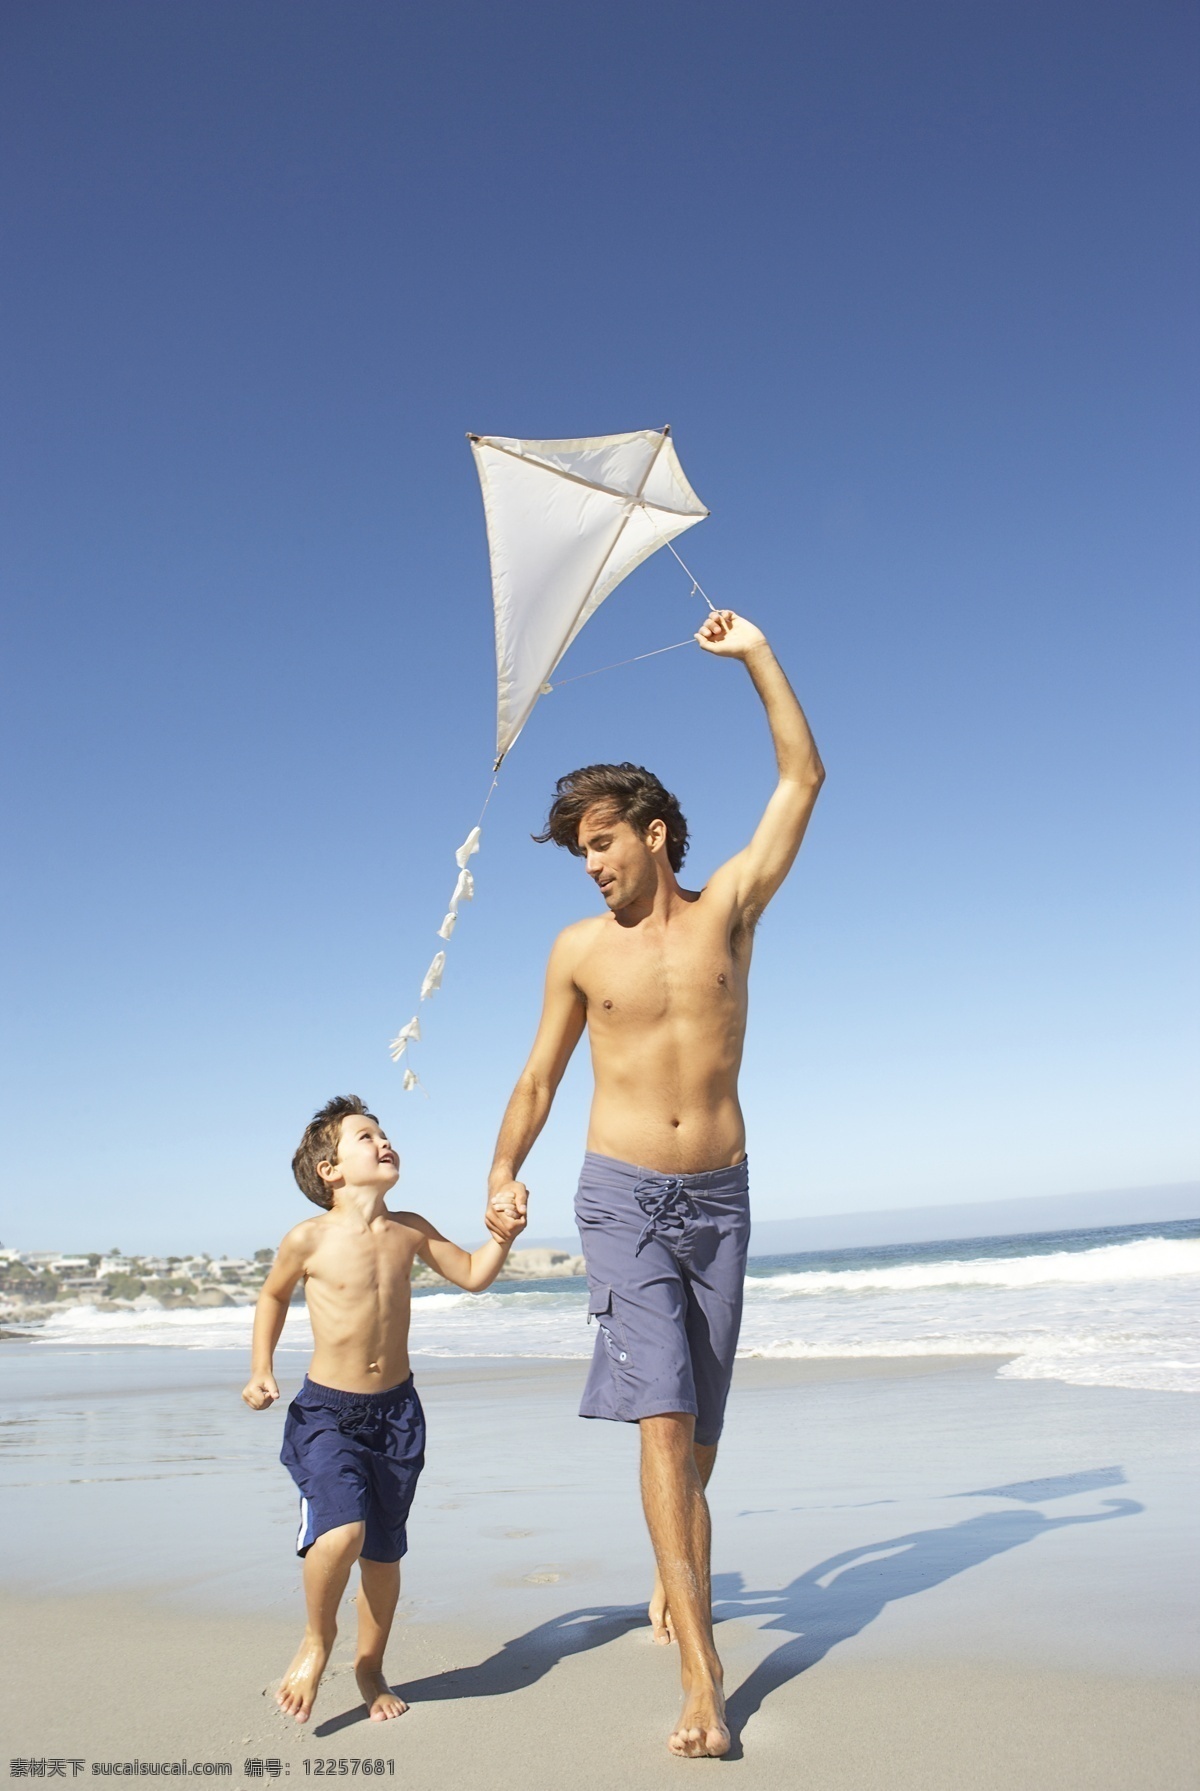 沙滩 上 放风筝 父子 人物 男性 外国男人 小男孩 玩耍 开心 海边 海浪 海天一色 幸福 生活人物 人物图库 人物图片